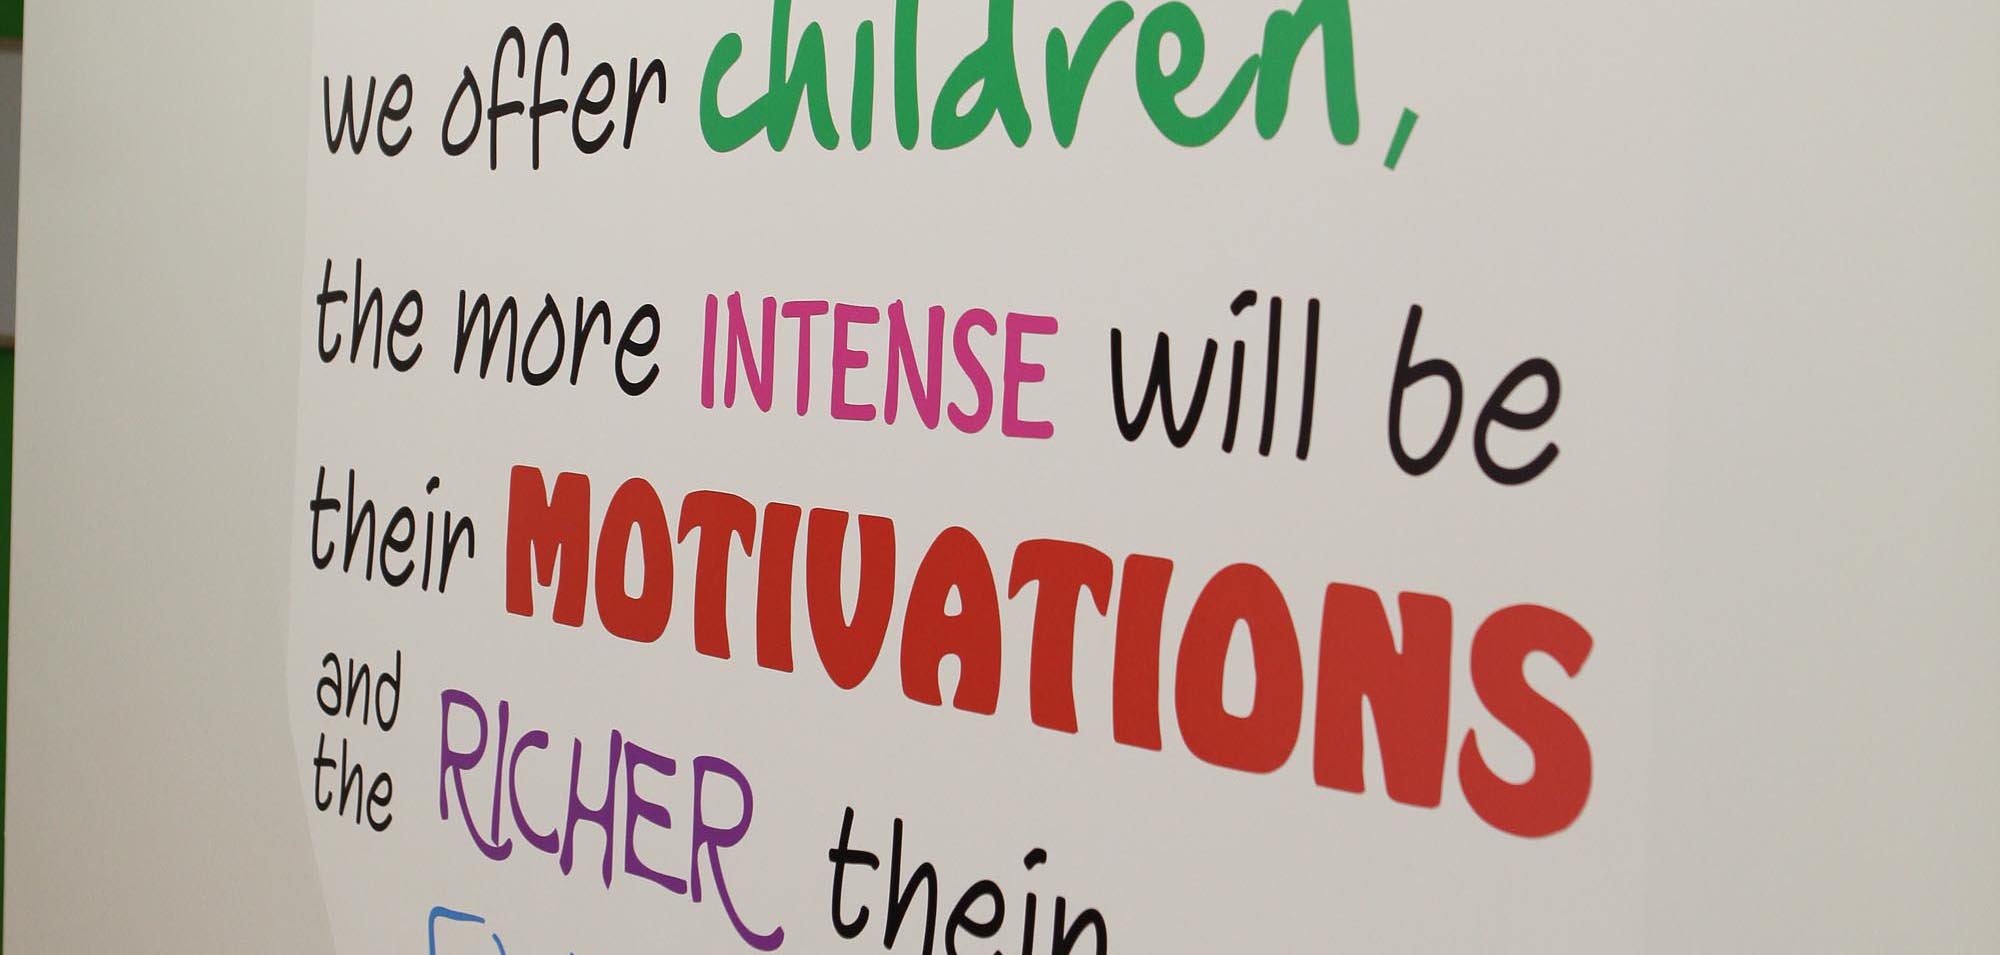 Motivational words for children